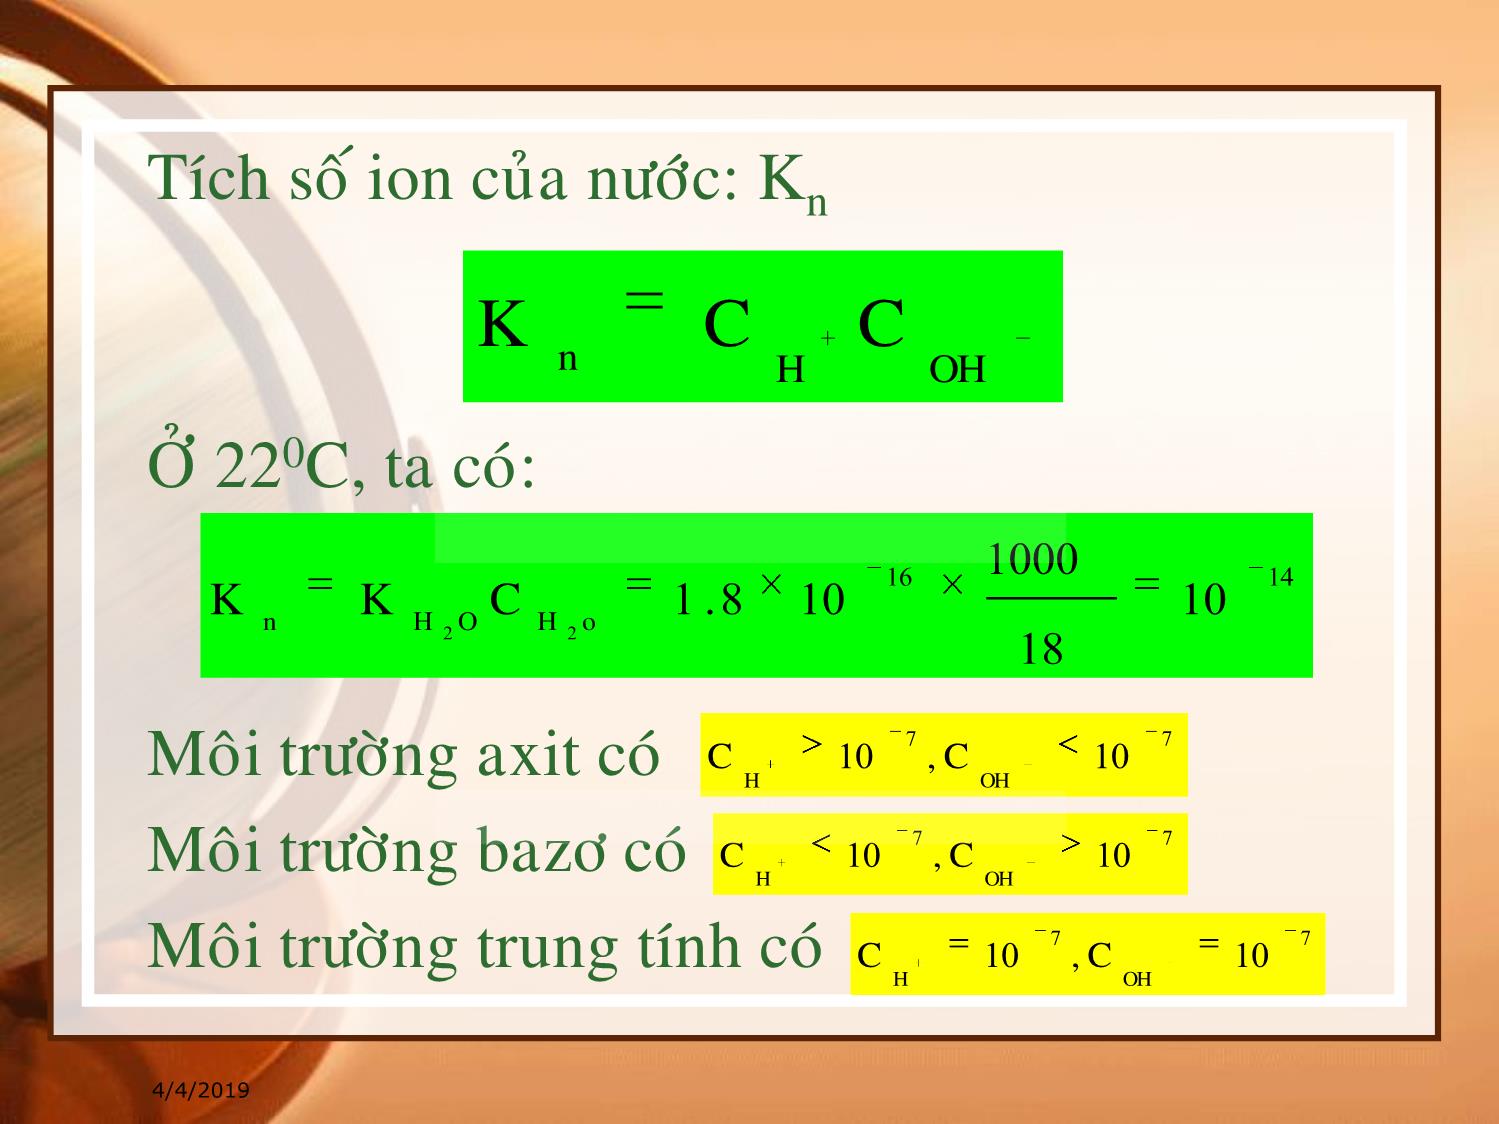 Bài giảng Hóa đại cương - Chương 13: Cân bằng ion của nước - Huỳnh Kỳ Phương Hạ trang 3